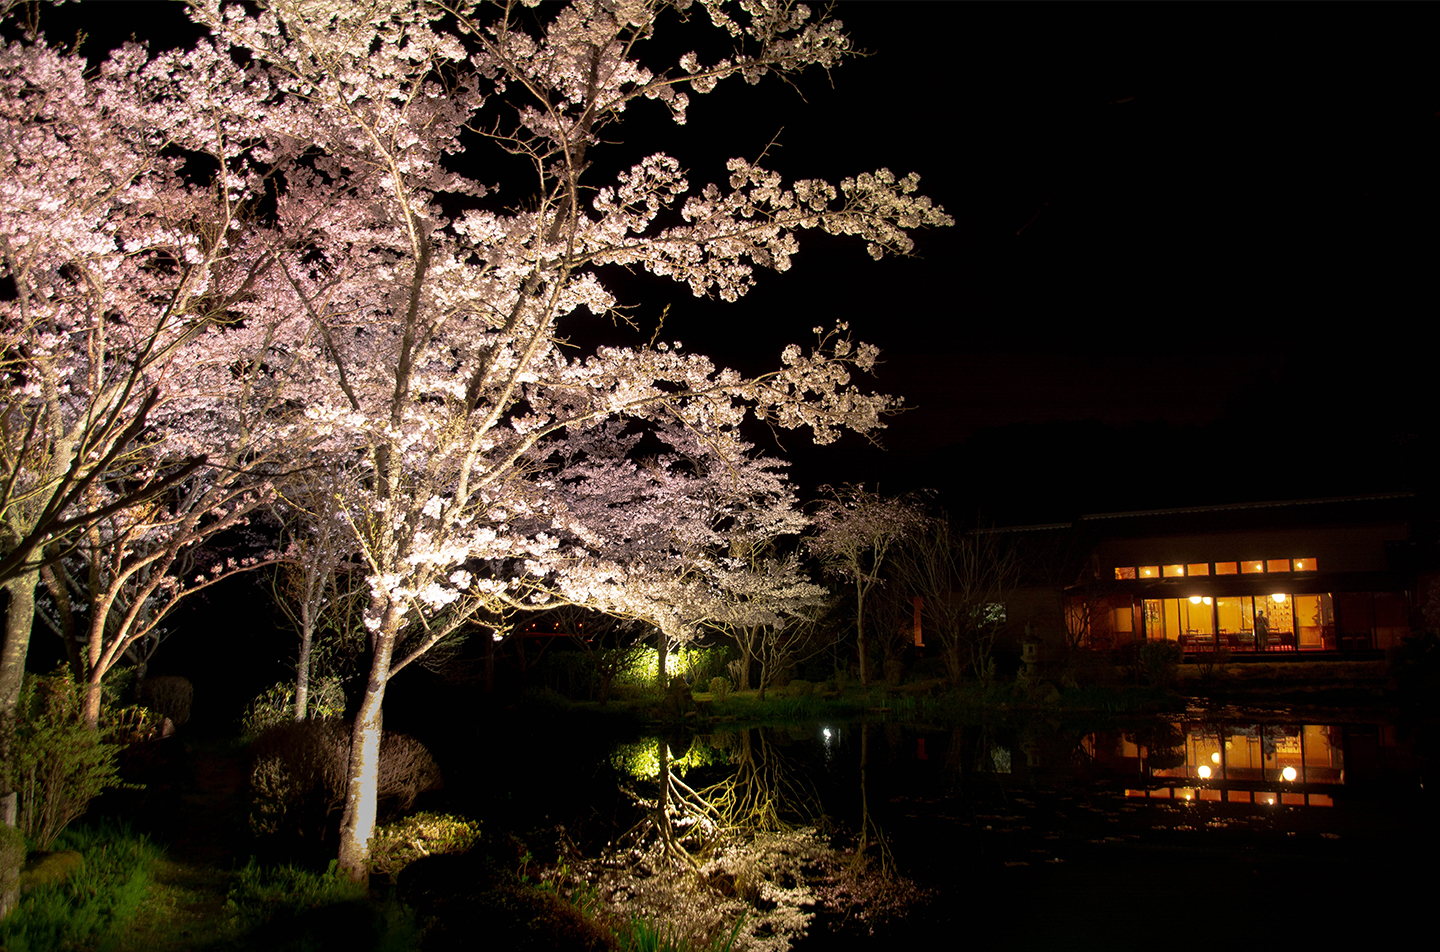 綾部の料亭 ゆう月 春の桜のライトアップ画像